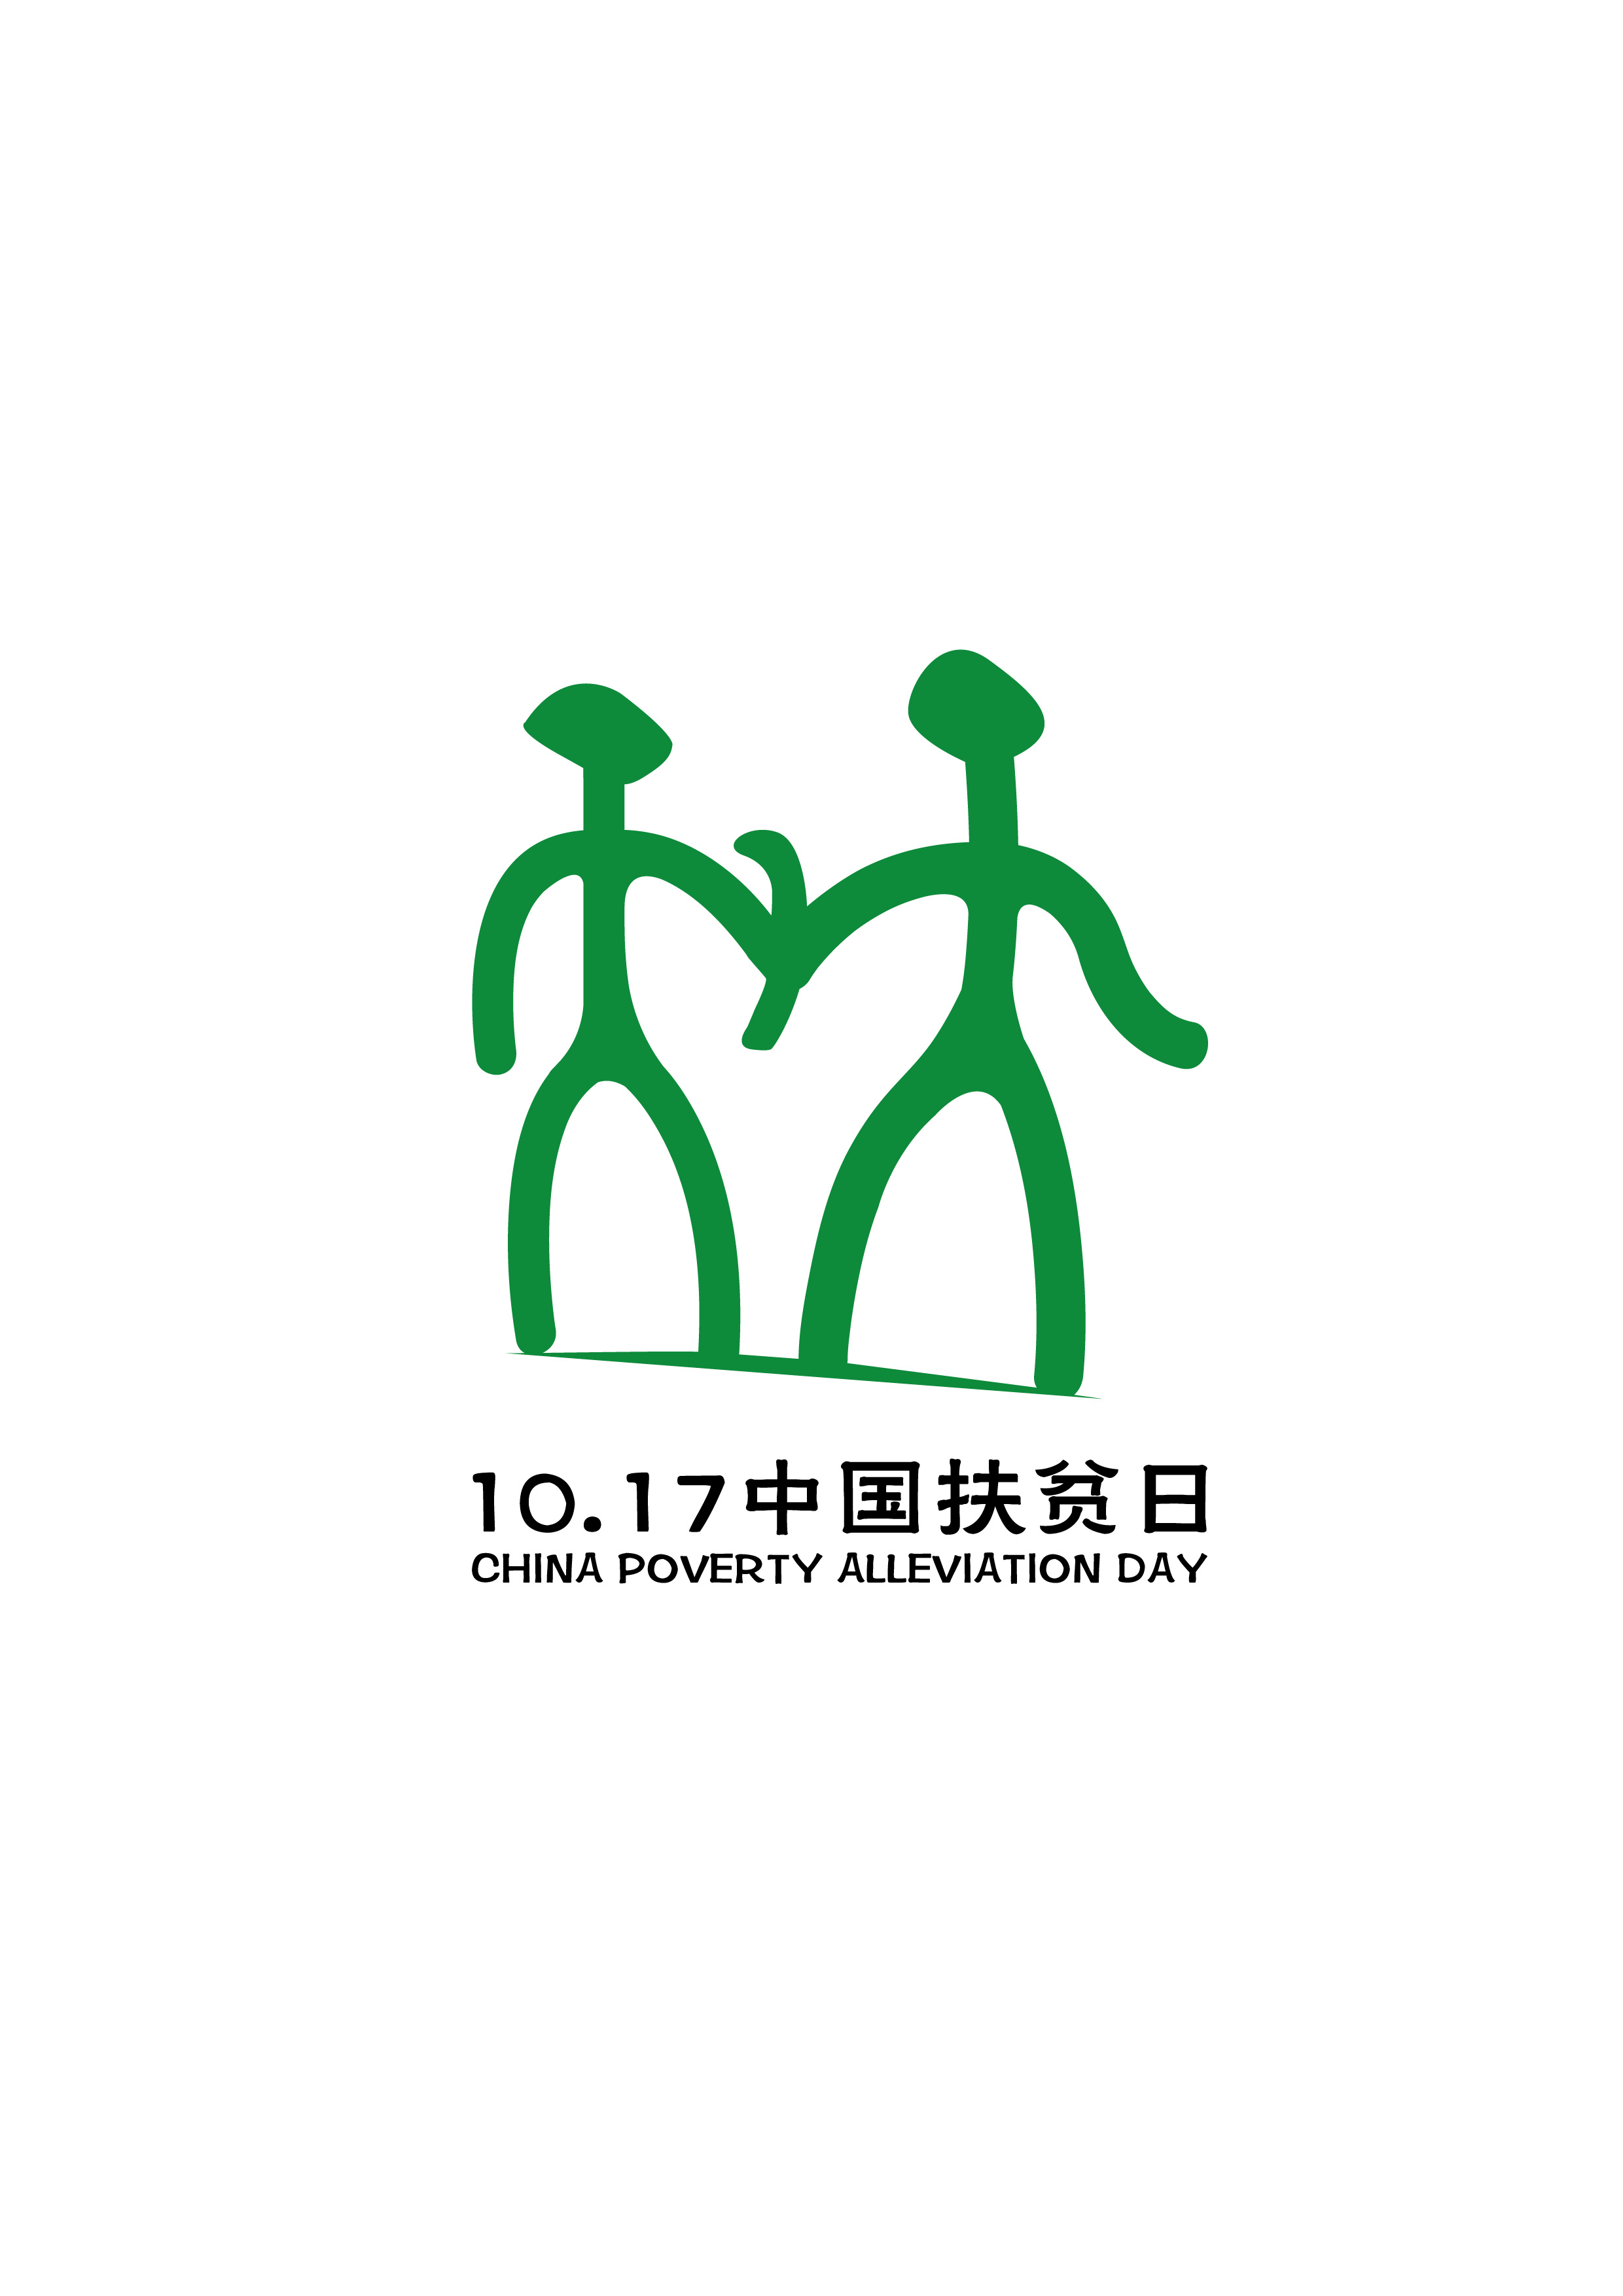 中国扶贫日logo设计:扶贫,我们共同的行动